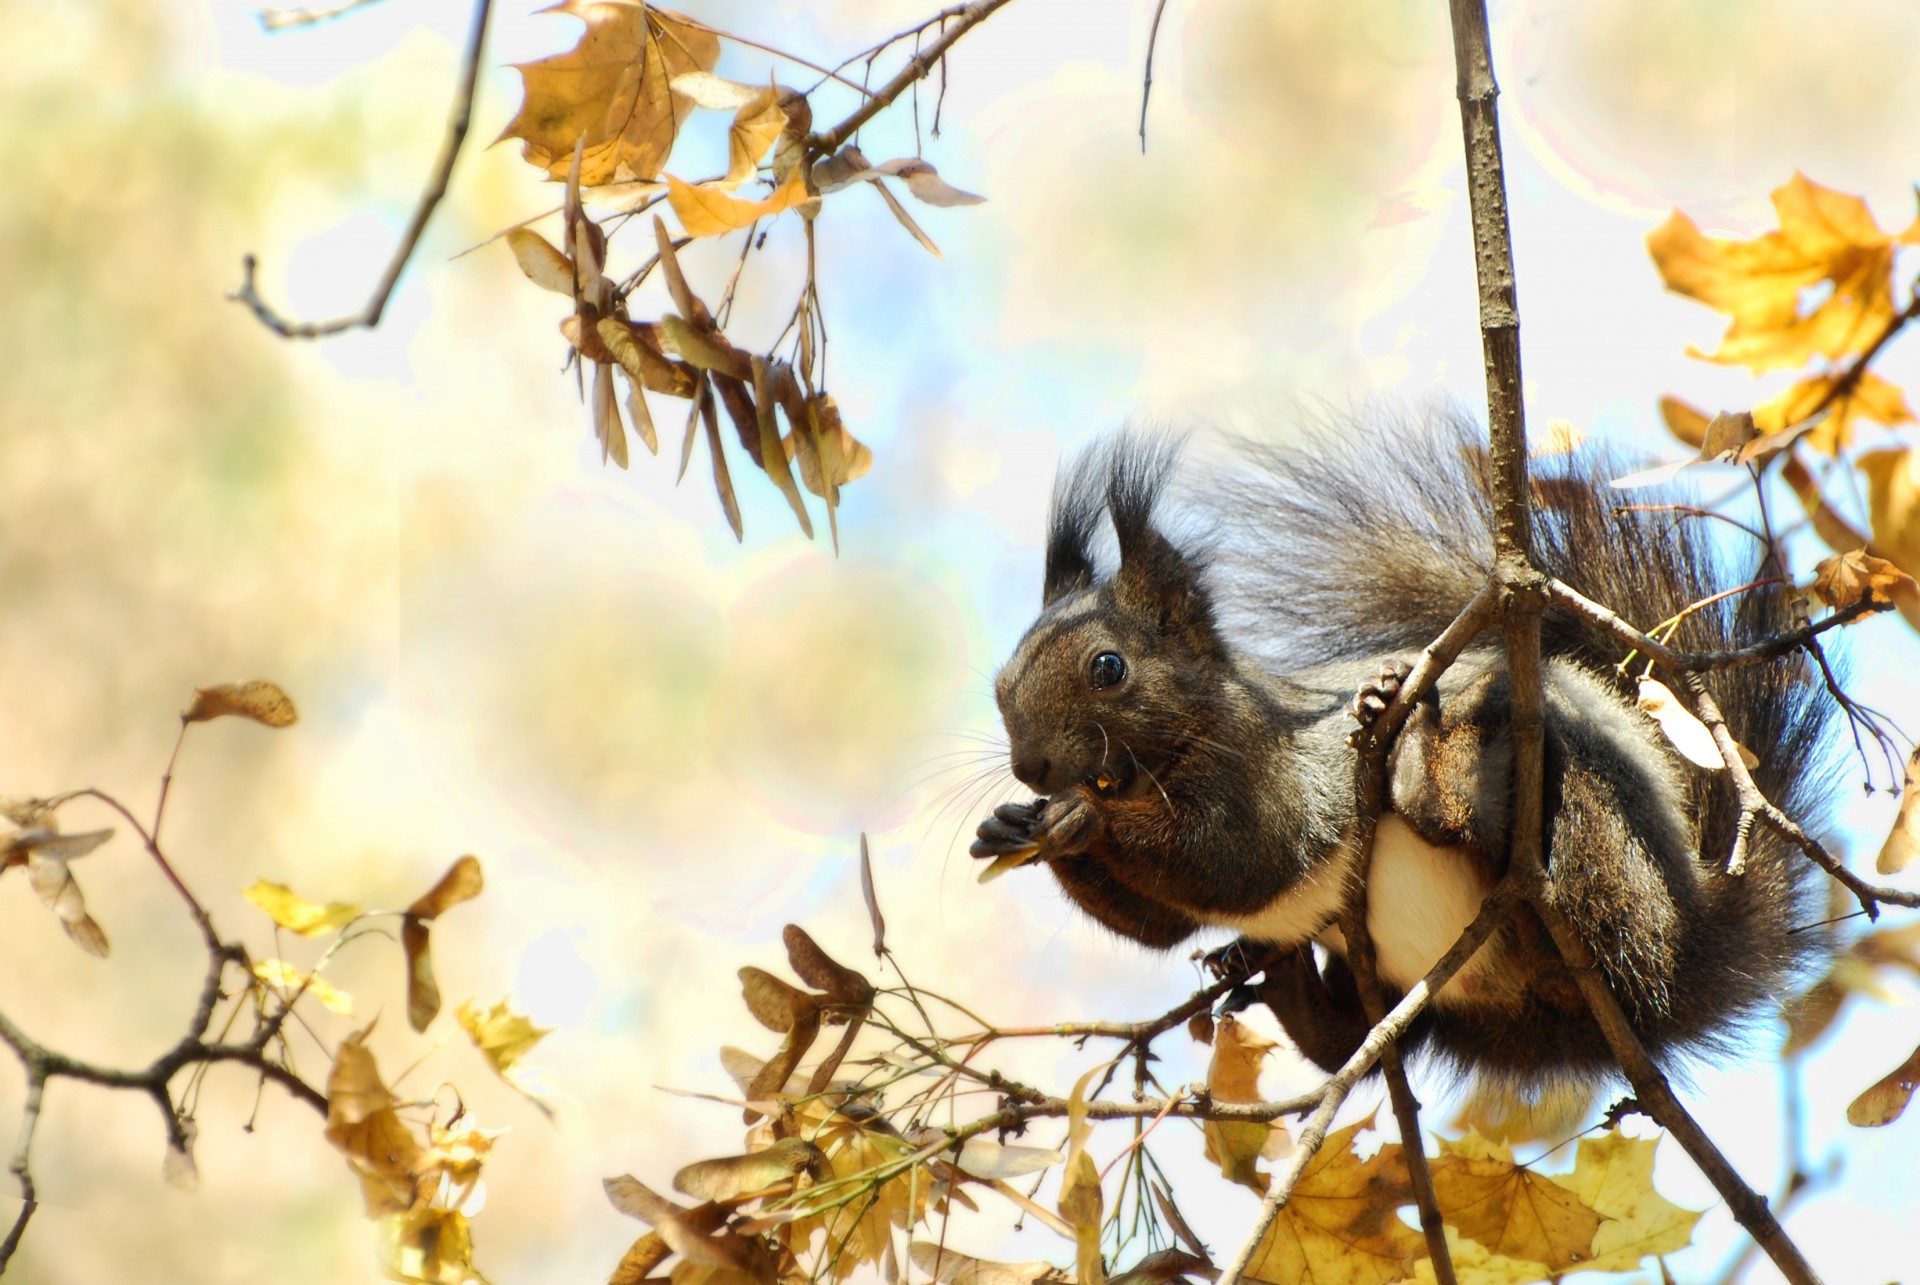 Фотоконкурс ”Златна есен” - предложение на редакцията на Дир